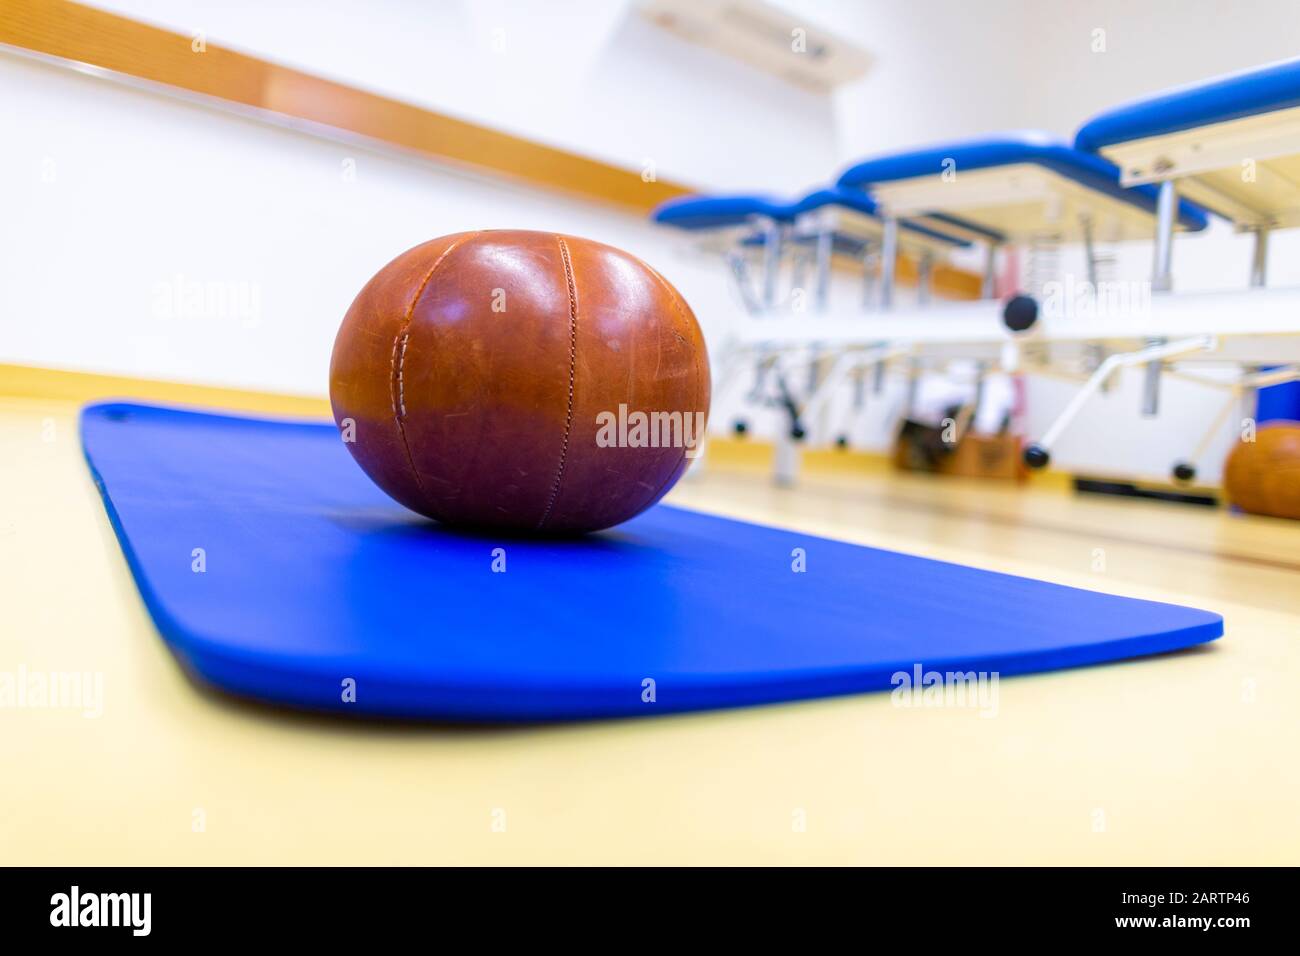 La pelota de gimnasio se encuentra en una alfombra azul Foto de stock